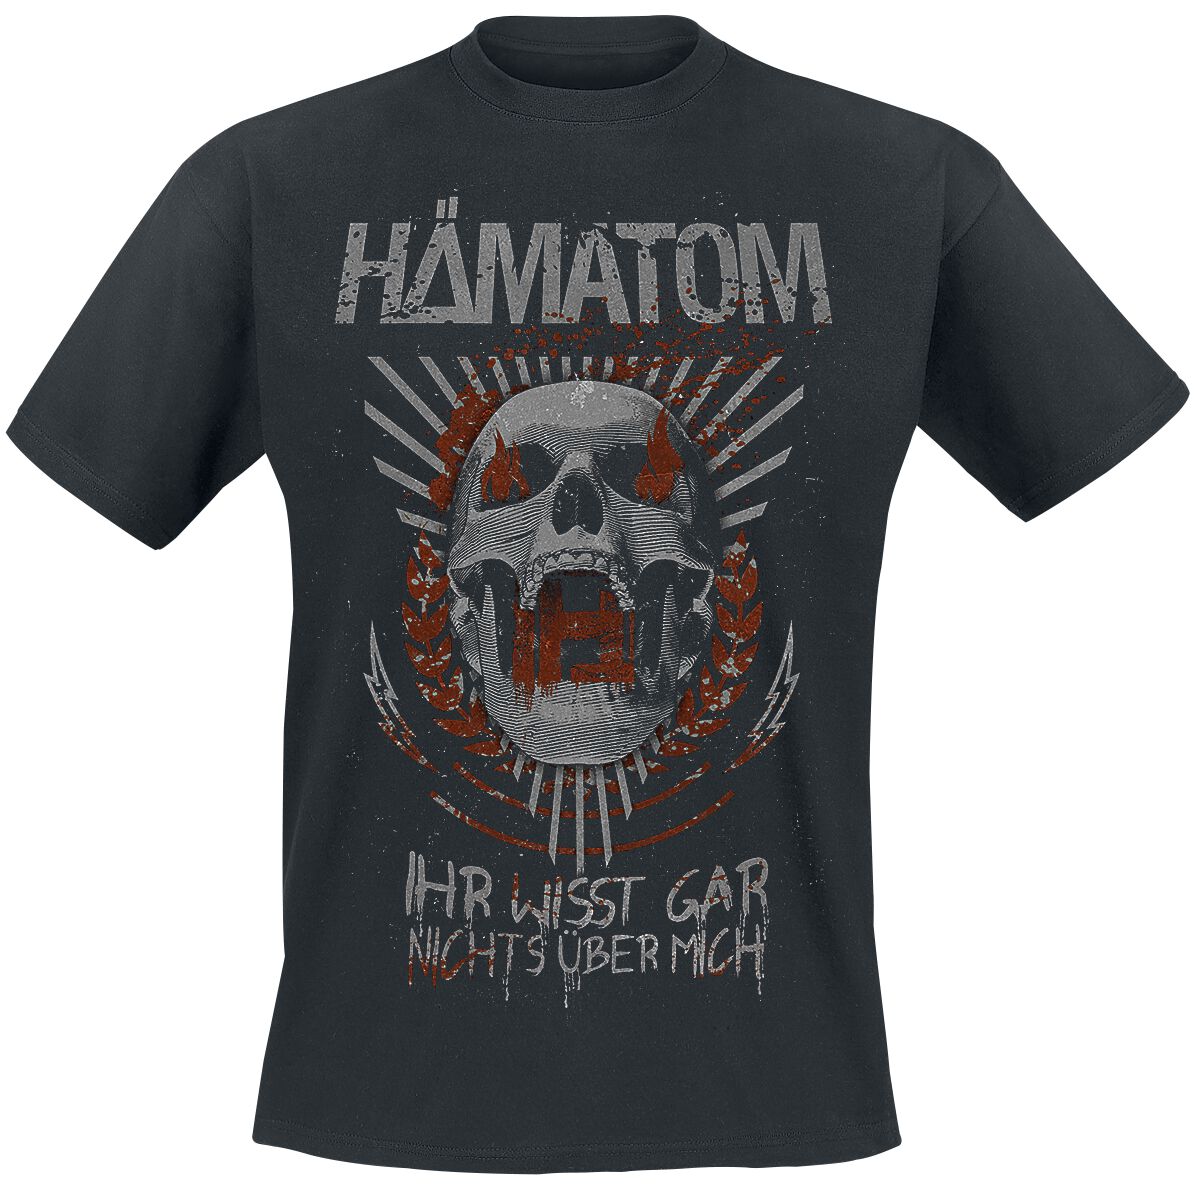 Hämatom T-Shirt - Ihr wisst gar nichts über mich - S bis 5XL - für Männer - Größe XL - schwarz  - Lizenziertes Merchandise!